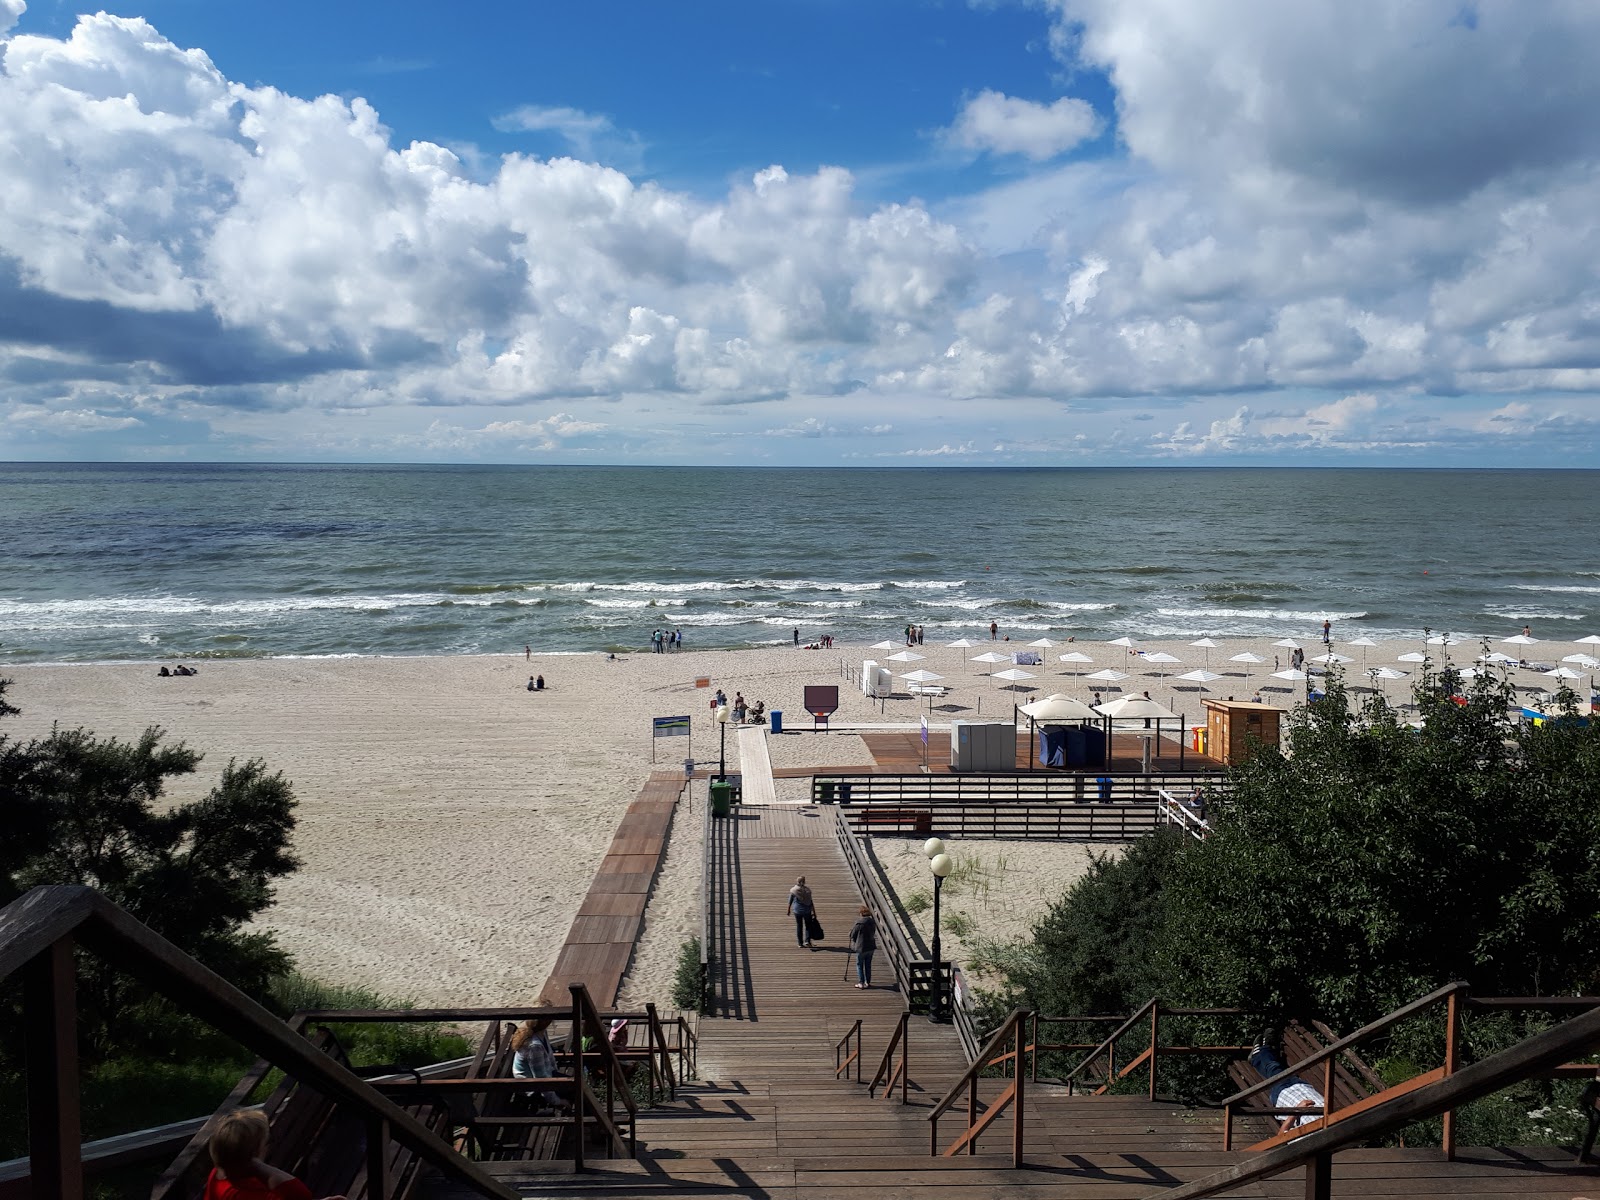 Zdjęcie Yantarnyy Plaj II - popularne miejsce wśród znawców relaksu